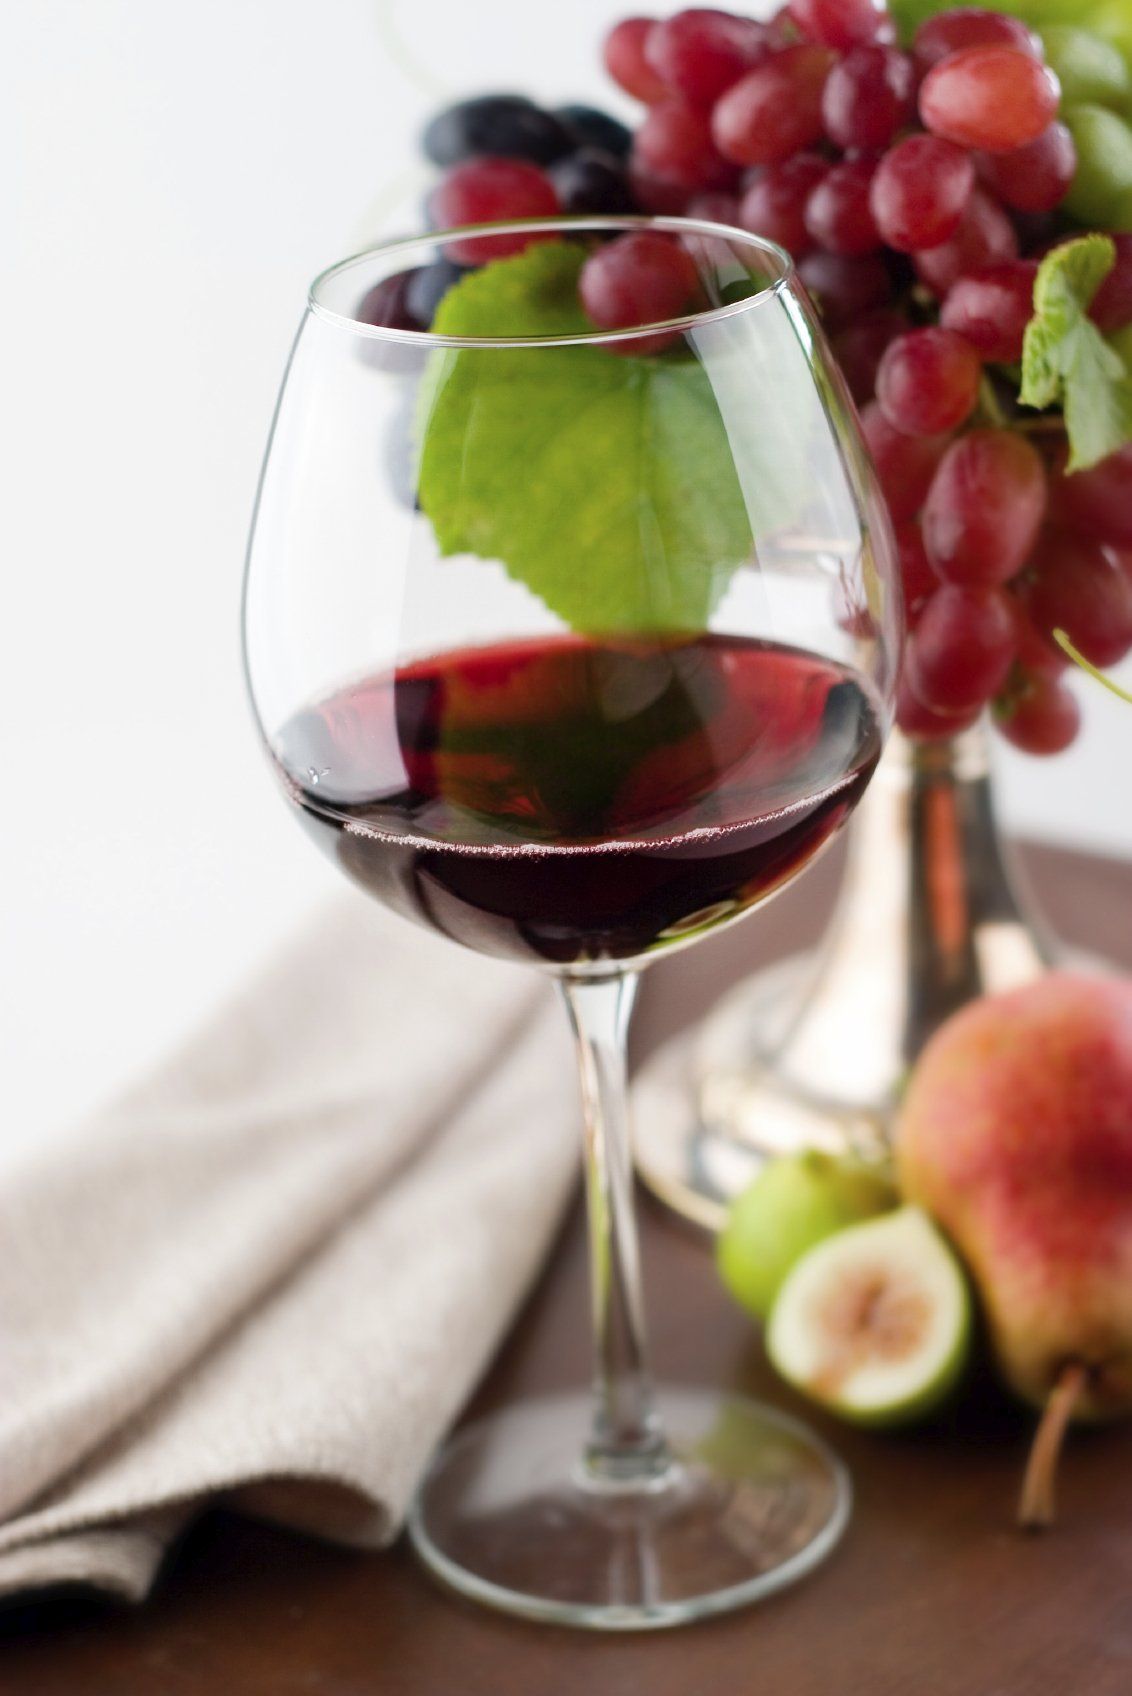 Weinlexikon - Alles wichtige über Wein